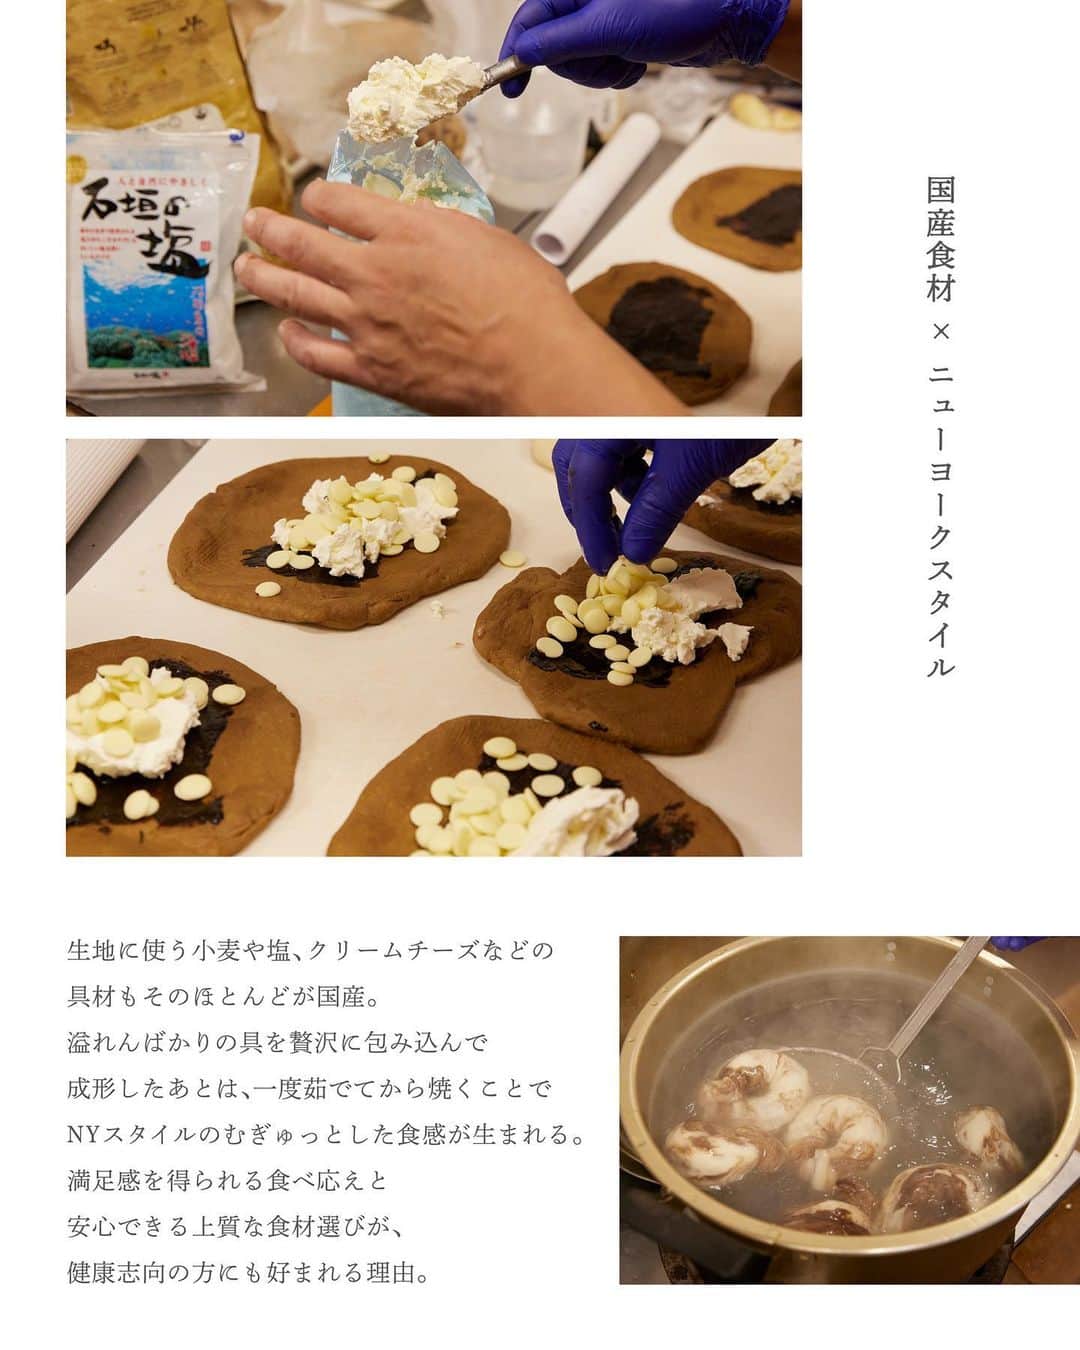 NEWoMan_officialさんのインスタグラム写真 - (NEWoMan_officialInstagram)「［🥐🥖🥯］  ― TOKYO BAKERY JOURNEY ―  10月2日（月）〜10月15日（日）の間ニュウマン新宿にて開催される「NEWoMan SHINJUKU パンまつり2023」。その中から、パン好きのインフルエンサーとのスペシャルコラボ商品を開発いただいた3ショップにフォーカスしお店の特徴やパンのこだわりをご紹介していきます。  ルーツも違えば、店主の魅力もそれぞれ。まるで旅をするような感覚でパン屋さんを巡っていくと、たくさんの心踊るストーリーに出逢えました。 パンまつりを、さらにおいしく楽しむために。参加ベーカリーの背景と秋の味覚で作ったコラボ商品について、ちょっとだけ予習しておきましょう。  - - - - - - - - - - - - - - - - - - - - - - - - -  # 02  FUJI BAGLE  @fujibagel  2ショップ目は、幡ヶ谷にお店を構える「FUJI BAGLE（フジ ベーグル）」。北海道産の小麦粉、天然酵母、水、石垣の塩のみで生地を作るこだわりのベーグル専門店です。昔からパン、うどん、蕎麦など粉ものを加工するのが趣味だったというご主人タカシさんと、焼き上がったベーグルでサンドウィッチ（こちらも人気商品！）も作っているチヨミさんの夫婦2人で営んでいる。「朝1番に来ないと買えない！ということがないように、1日を通して随時焼き上げていくように意識しています。それでも休日はお昼過ぎには完売してしまうこともあるのですが。とってもありがたいことです」とおふたり。今日も開店前からお客さまが列を作り、確かな人気ぶりが伺えるベーカリーでした。  ■ Special Collaboration  >>> かぼちゃよくばりハロウィン ¥980 mixiの「本当にうまいパン屋さん」の副管理人としてコミュニティを盛り上げ、ヨガをしたり愛犬のジーニーとパン屋を巡る日々をブログで発信し続けているsachie hirokawa（@ponsachie）さんとFUJI BAGLEが「まるごと、秋の味覚」をテーマにスペシャルコラボ 👨‍🍳🎃コラボ商品の詳細は後日投稿予定です。素晴らしいビジュアルの全貌をお楽しみに！  ＼ sachieさん’s commet ／ みたらし団子入りかぼちゃベーグルは、もちもちのかぼちゃ生地に自然な甘さのかぼちゃがたっぷり！そこへ甘じょっぱいみたらし団子を入れて、もちもちもちもち。歯応えには胡桃を入れてもらいました。かぼちゃの種もたっぷりで、よくばり盛り沢山の楽しいベーグルが完成しました！  ＼ FUJI BAGLE’s commet ／ 北海道産のかぼちゃを使って、具だくさんで食べ応え満点のベーグルに仕上げました。パンまつりで皆さんに召し上がっていただくのが楽しみです。あっという間の制作時間でしたが、一緒に作り上げていく過程はとても良い時間でした！  - - - - - - - - - - - - - - - - - - - - - - - - -  ■ Shop Information FUJI BAGLE 渋谷区幡ヶ谷3-11-7メゾン明1F 営業時間：11時〜売り切れ次第閉店　 定休日：日曜・月曜・火曜 ※ シーズンや時間によって店頭に並ぶパンの種類は異なります。 　 また、売り切れの際はご容赦ください。   ■ NEWoMan SHINJUKU パンまつり2023 〔開催日程〕 10月2日(月)〜10月15日(日) 〈FUJI BAGLE：10月13日（金）～10月15日（日）〉 11:00〜20:00 ※一部営業時間が異なるショップがございます。  〔開催場所〕 　ニュウマン新宿 館内 　2F エキナカ　パンまつり特設会場 　（JR新宿駅新南改札内 イベントスペース）   〔イベント内容〕 🥐 人気ベーカリー12ショップが参加する限定ポップアップショップを開催！ 　 今年のテーマは「まるごと、秋の味覚」。各店の秋限定商品を要CHECK！ 　 参加ショップと出店スケジュールはストーリーズのハイライトよりご覧ください。 🍞 Instagramでは各ベーカリー自慢のスペシャリテをご紹介予定！ 🥨 対象の3ショップで購入いただくと、抽選で 　「パンのお供 or エキナカ食品ショップで使えるクーポン」がもらえる 　デジタルスタンプラリーを開催！ - - - - - - - - - - - - - - - - - - - - -   #NEWoMan #ニュウマン #NEWoMan新宿 #NEWoManSHINJUKU #FUJIBAGLE #フジベーグル #ベーグル #bagel #ベーカリー #bakery #幡ヶ谷グルメ #東京パン屋 #パン屋巡り #パンまつり #ニュウマン新宿パンまつり #BREADFESTIVAL  #パン #パンマルシェ #bread #新宿 #shinjuku #tokyo #instabread #ニュウマン新宿」9月26日 10時51分 - newoman_shinjuku